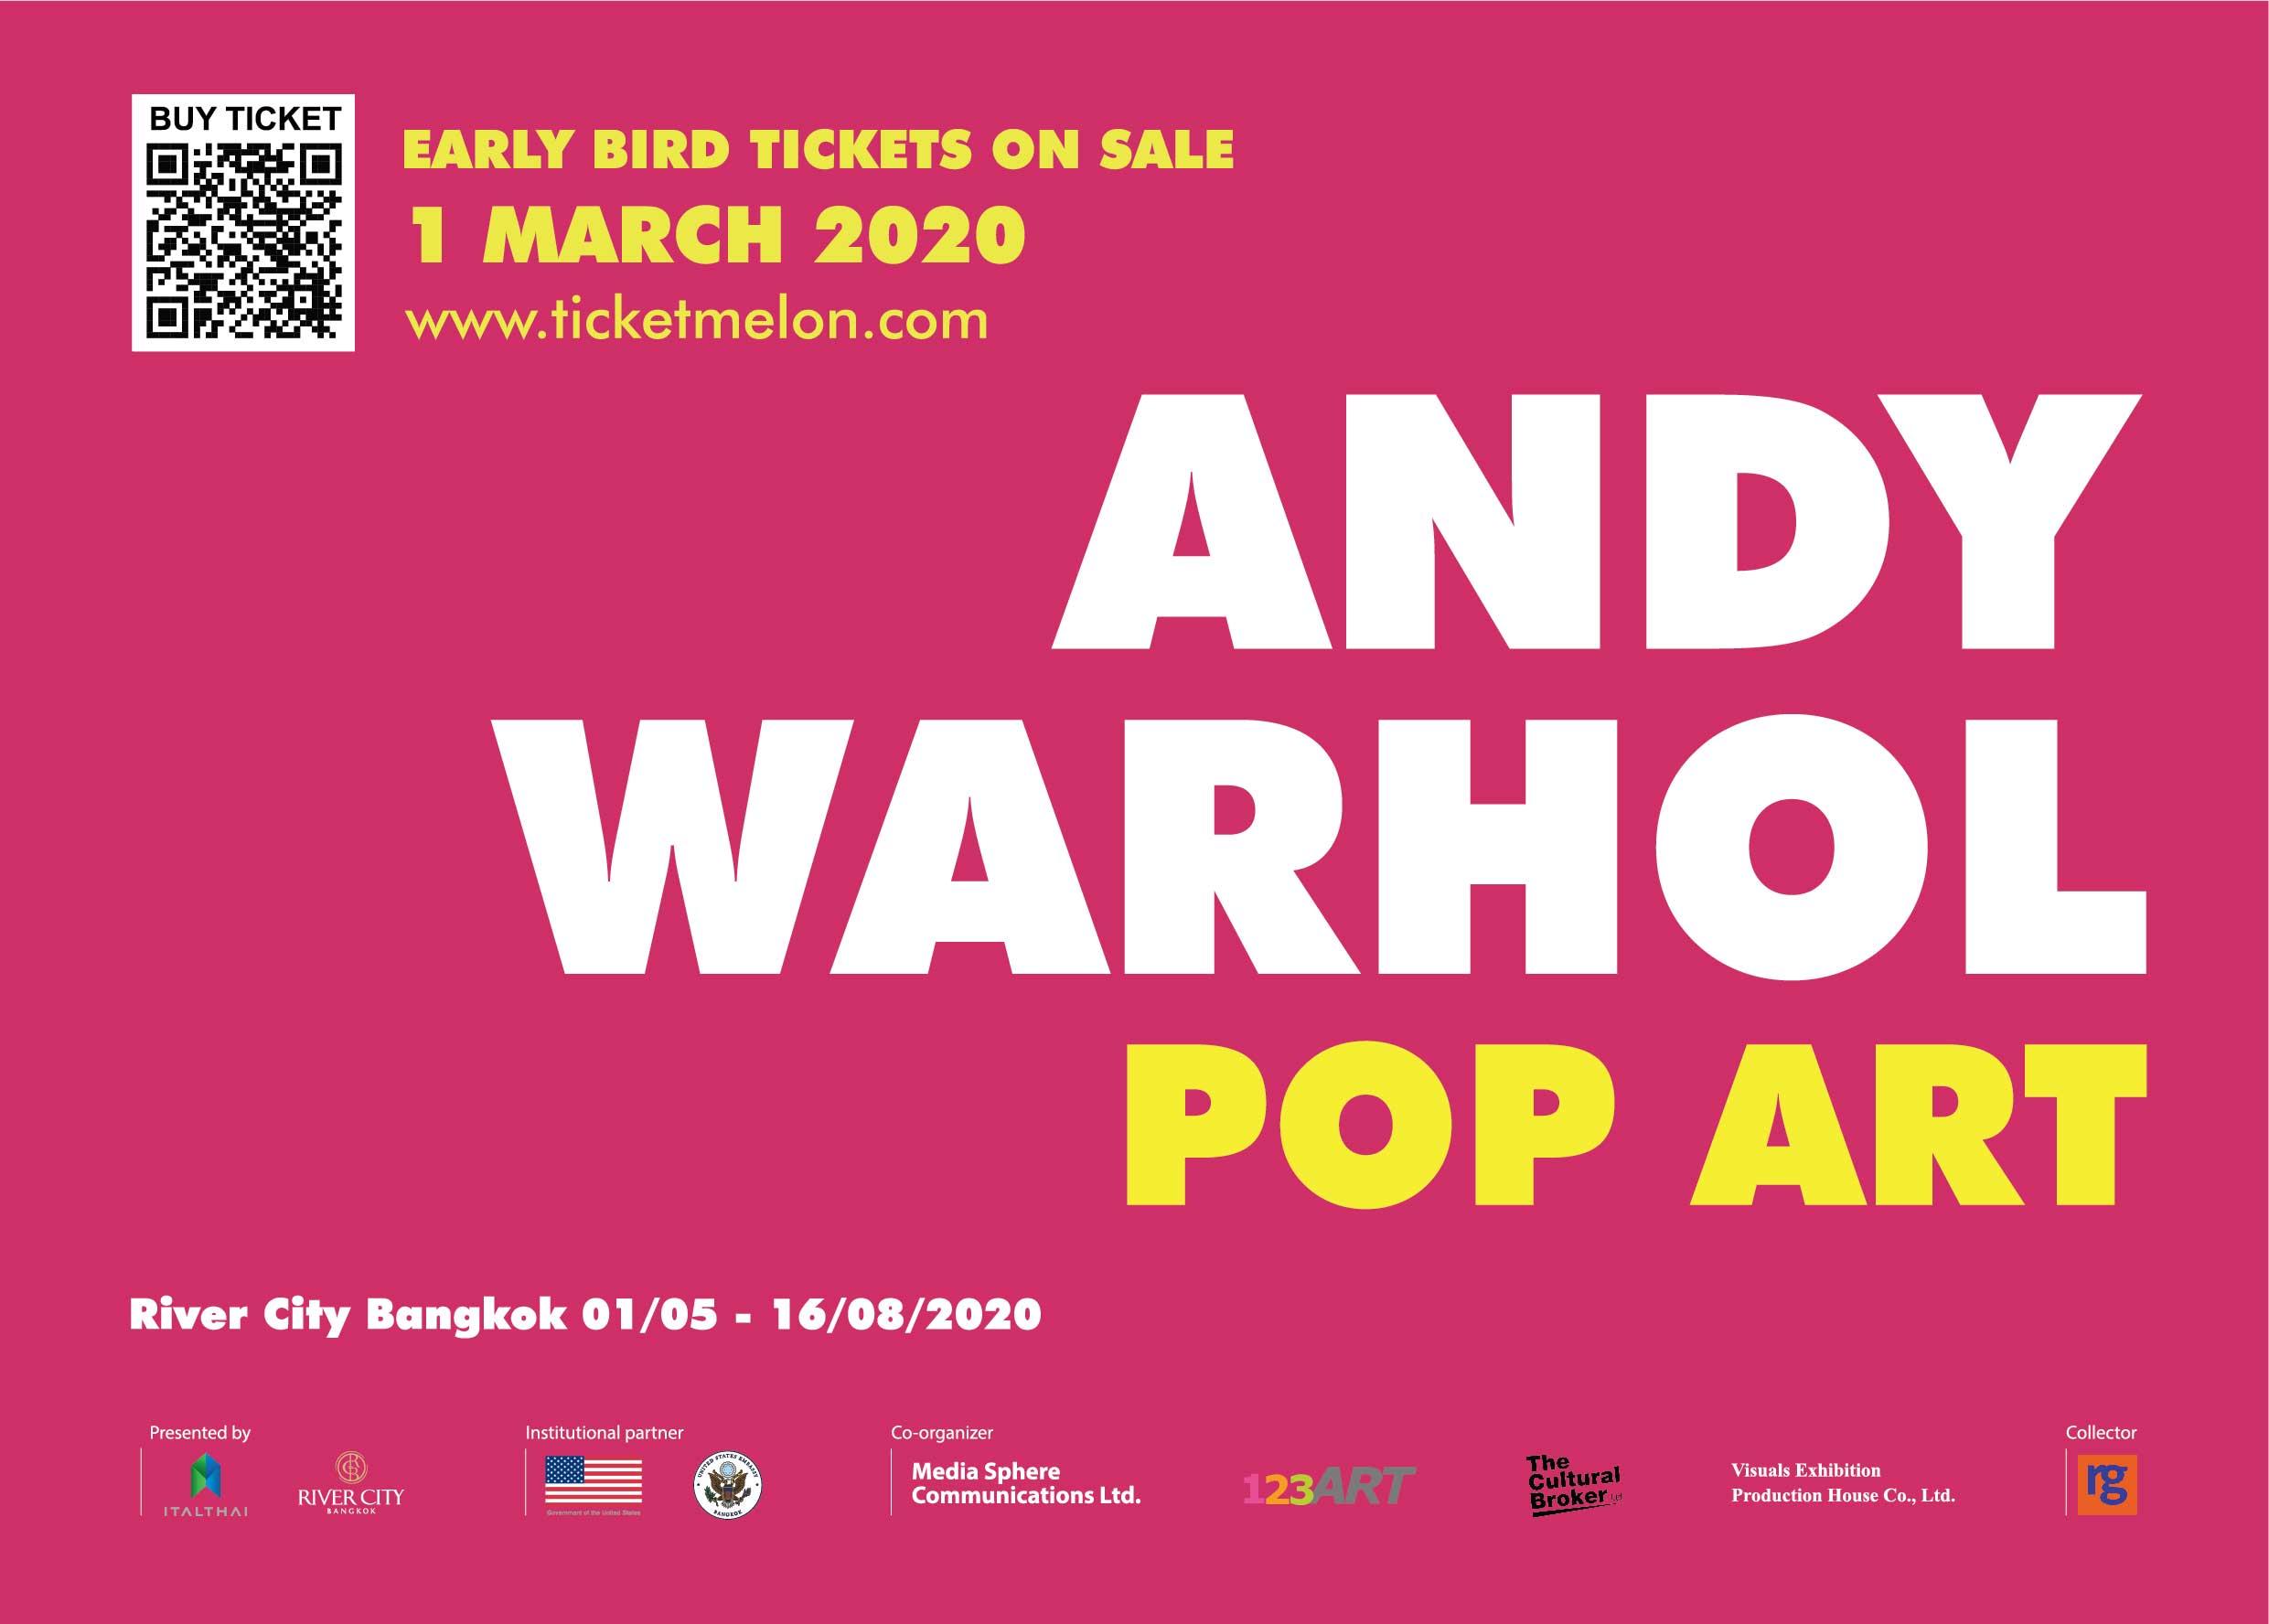 River City Bangkok จัดนิทรรศการ ANDY WARHOL: POP ART ผลงานศิลปะจาก Andy Warhol ราชาแห่งป๊อปอาร์ทในศตวรรษที่ 20 ครั้งแรกในประเทศไทย